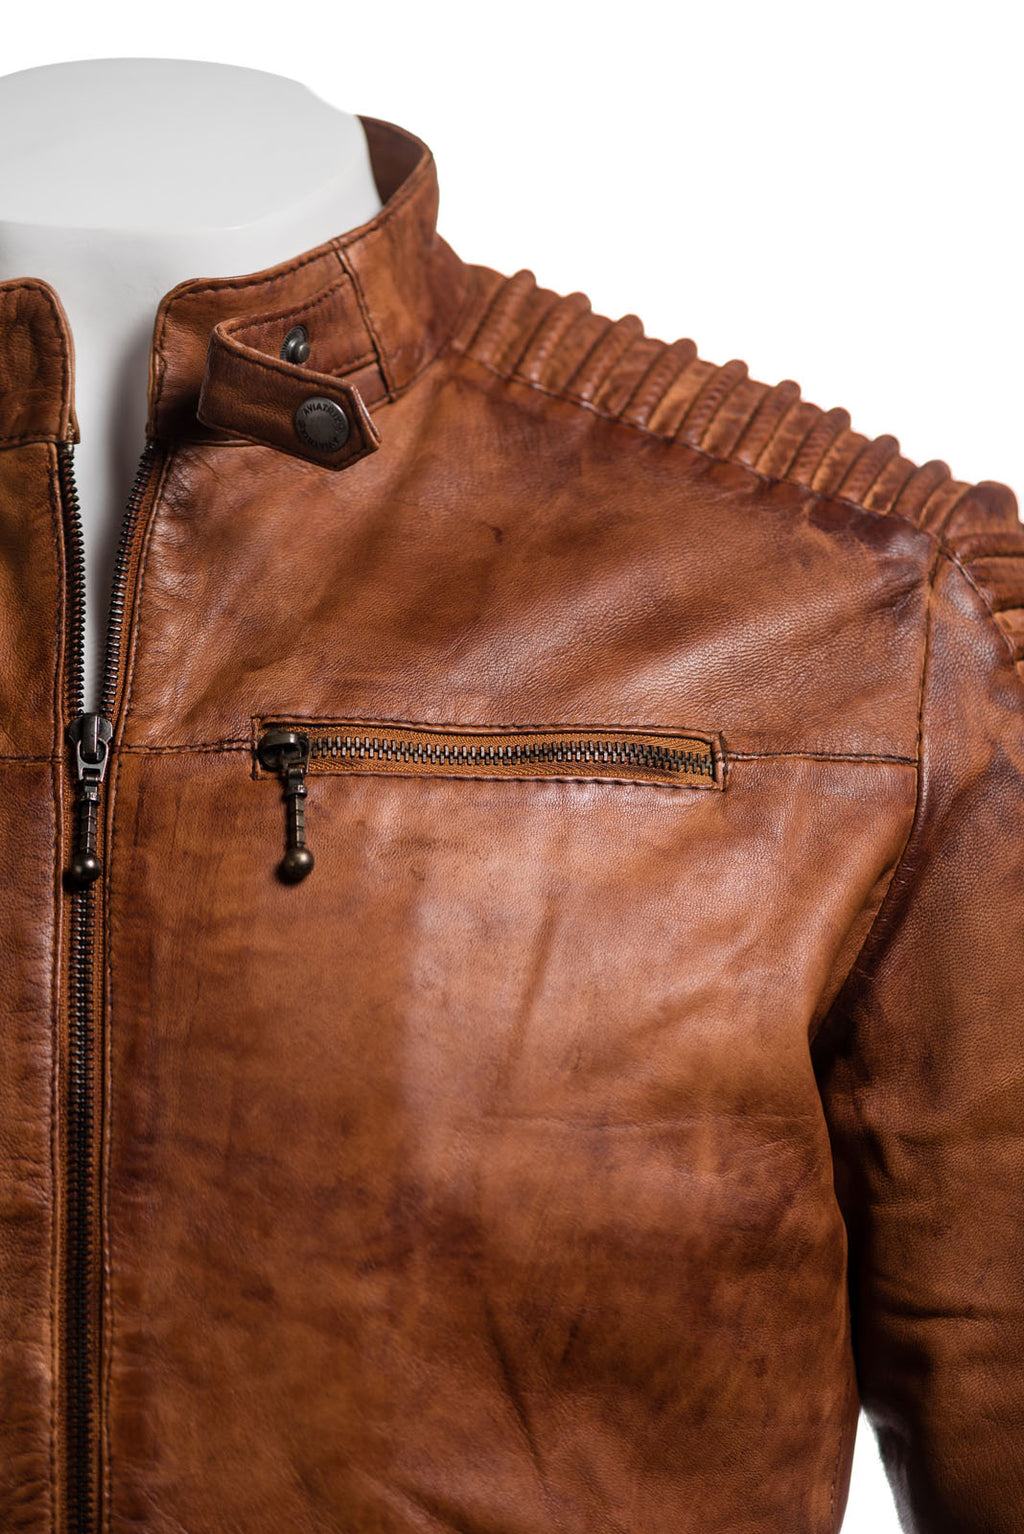 Men's Antique Racing Style Leather Biker Jacket: Alfio